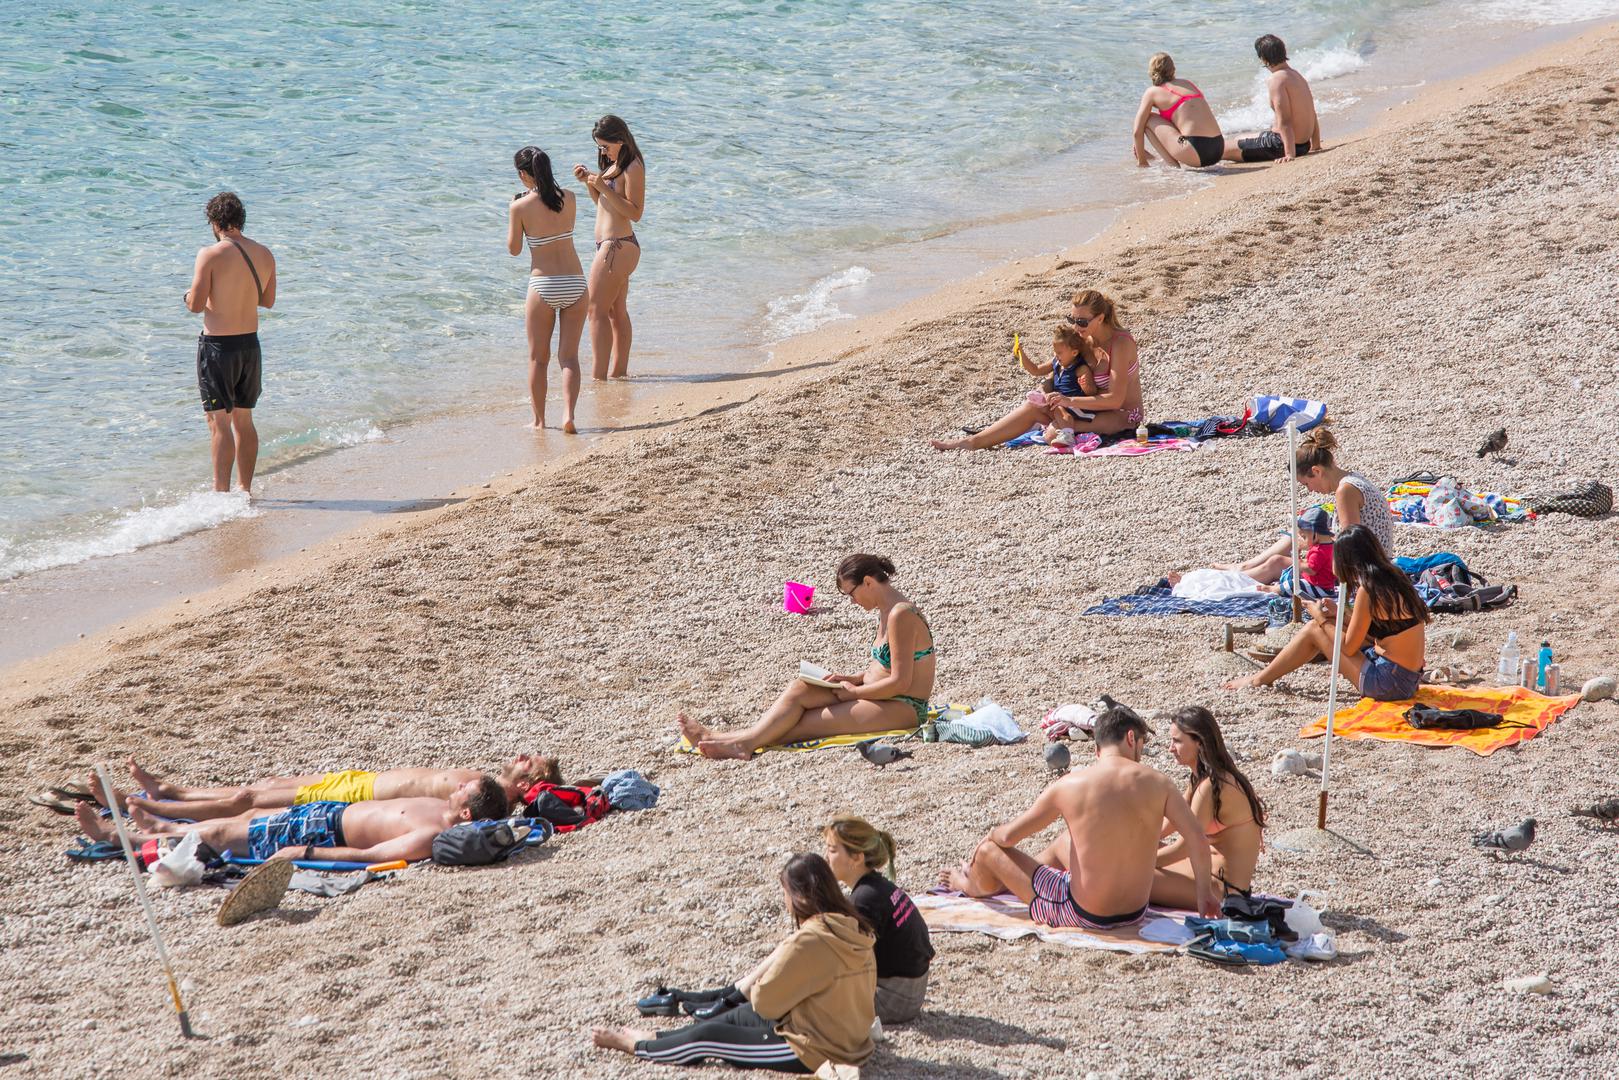 Ako je suditi po fotografijama iz Dubrovnika, more je i dalje ugodno za kupanje, a vanjske temperature idealne su za sunčanje i uživanje na plaži. 